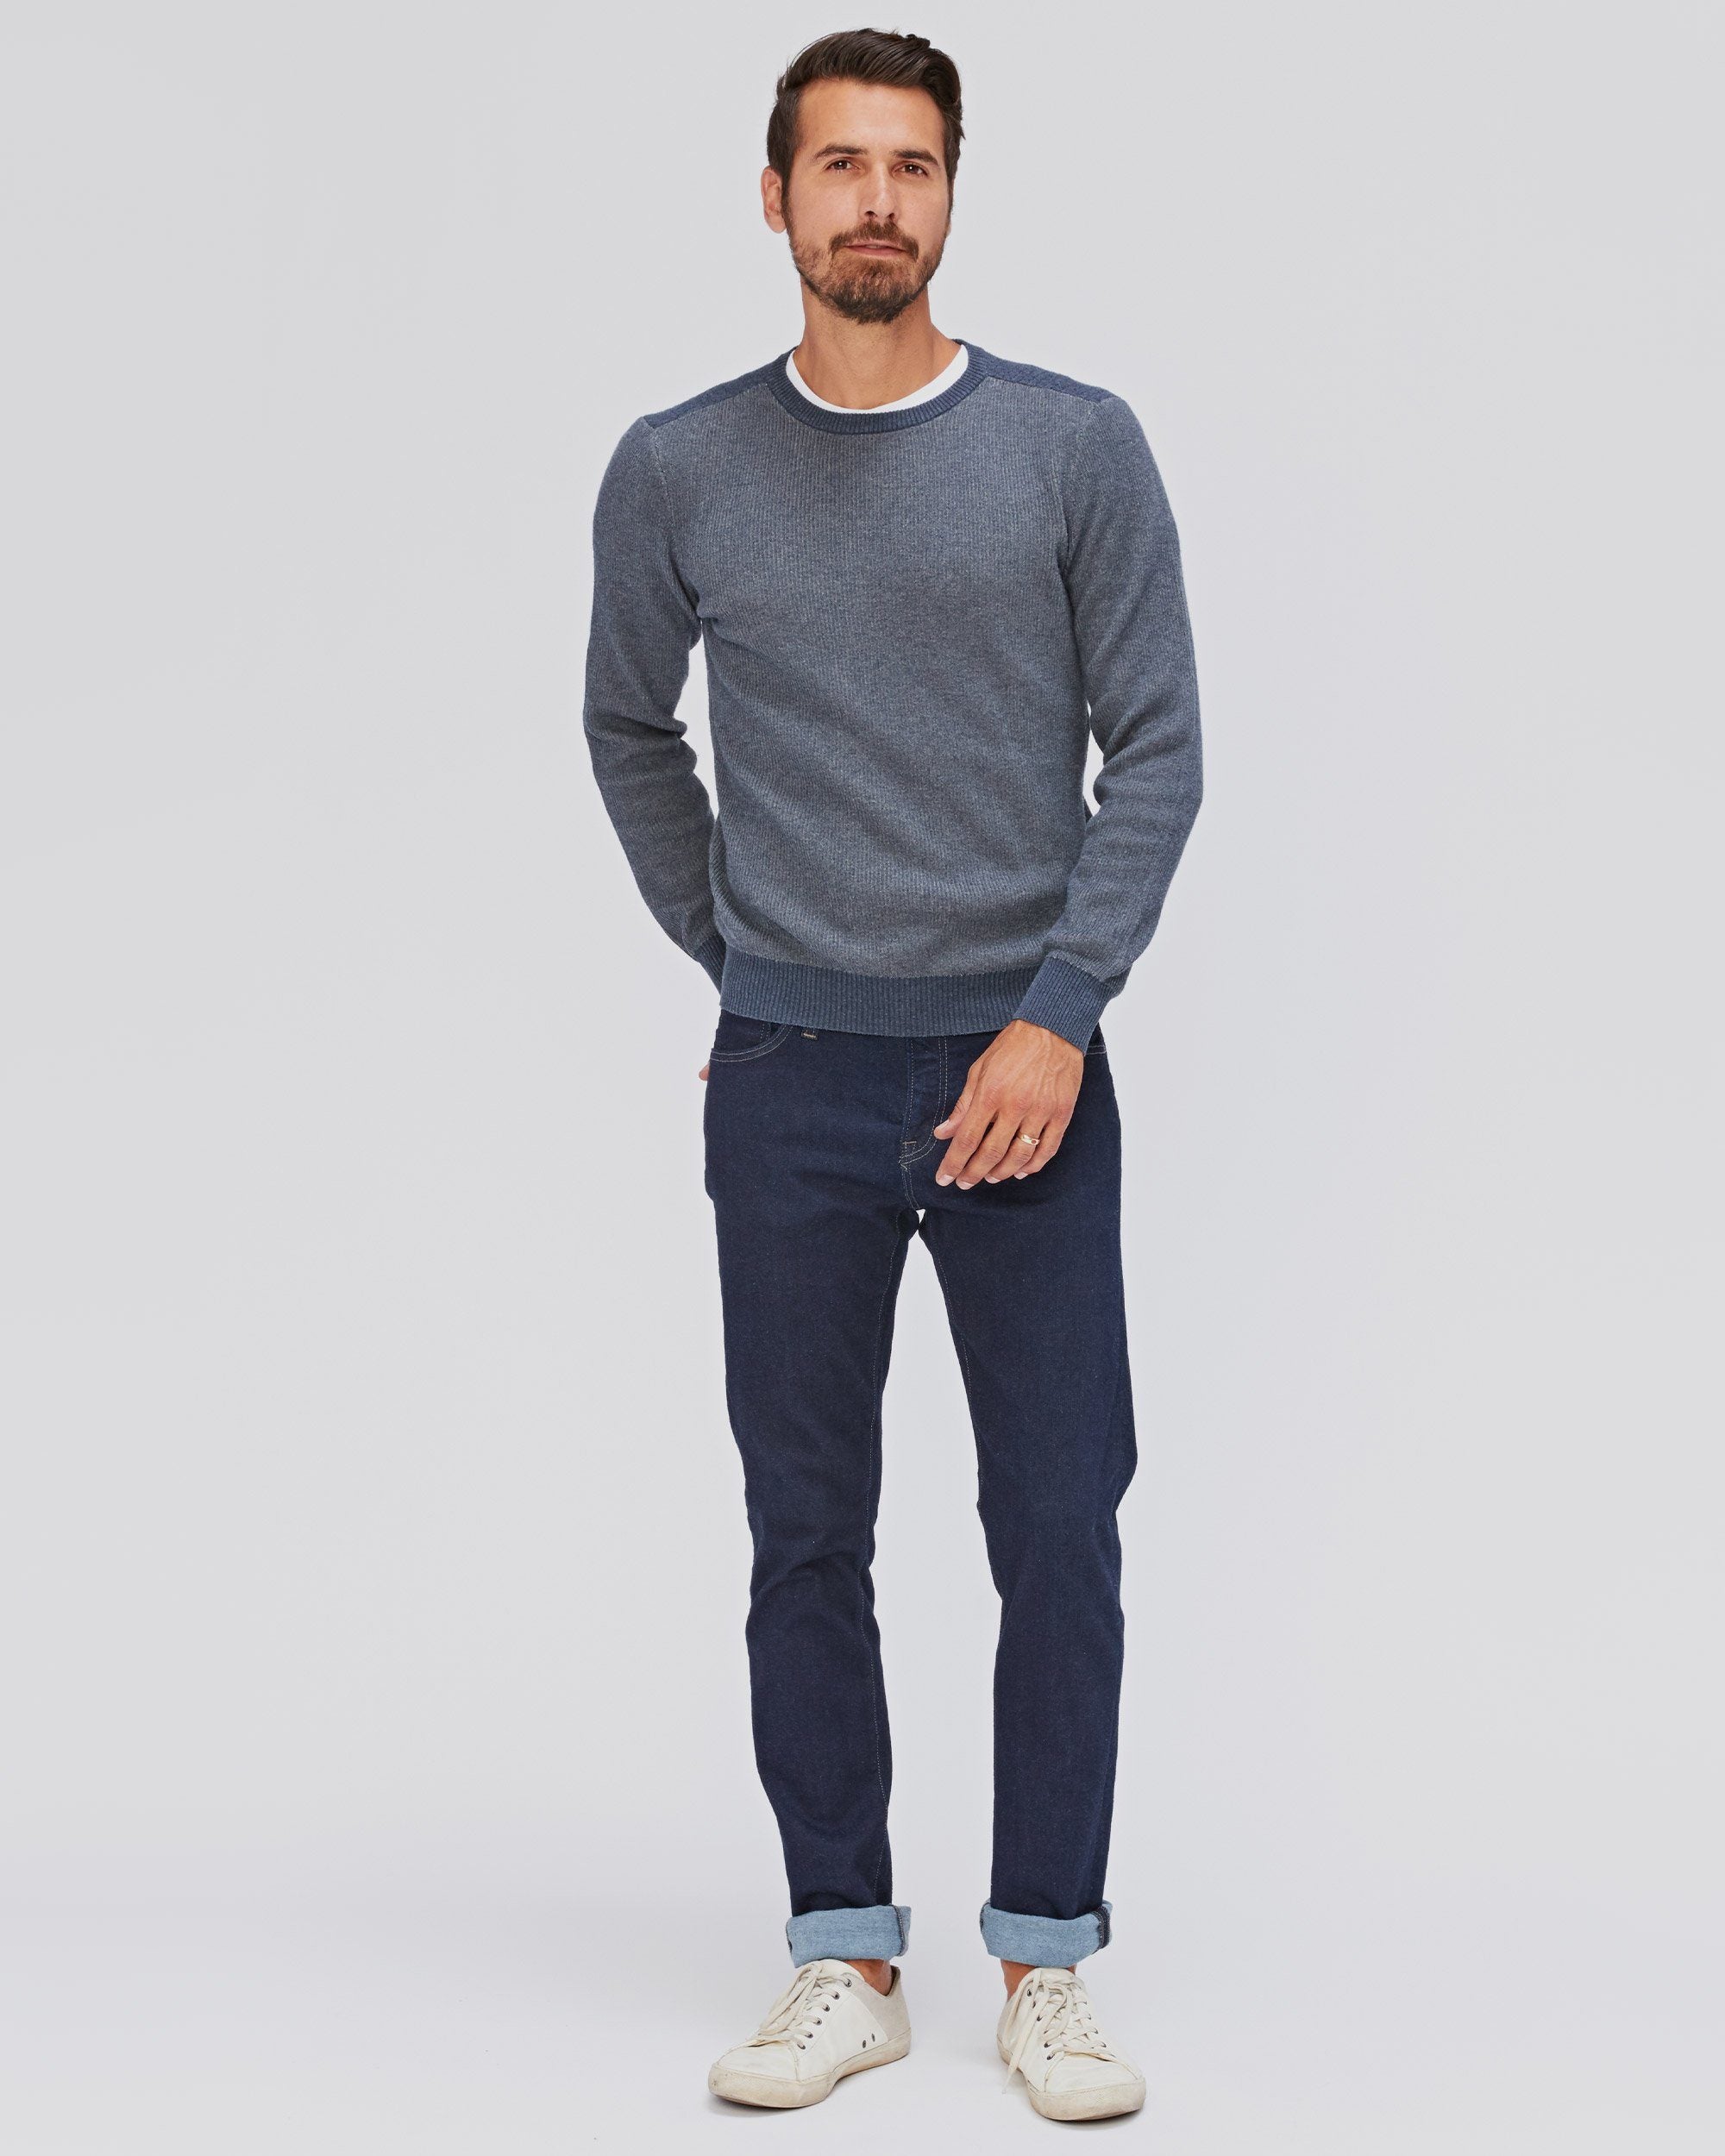 Kestrel Crew Neck Sweater – Agave Denim